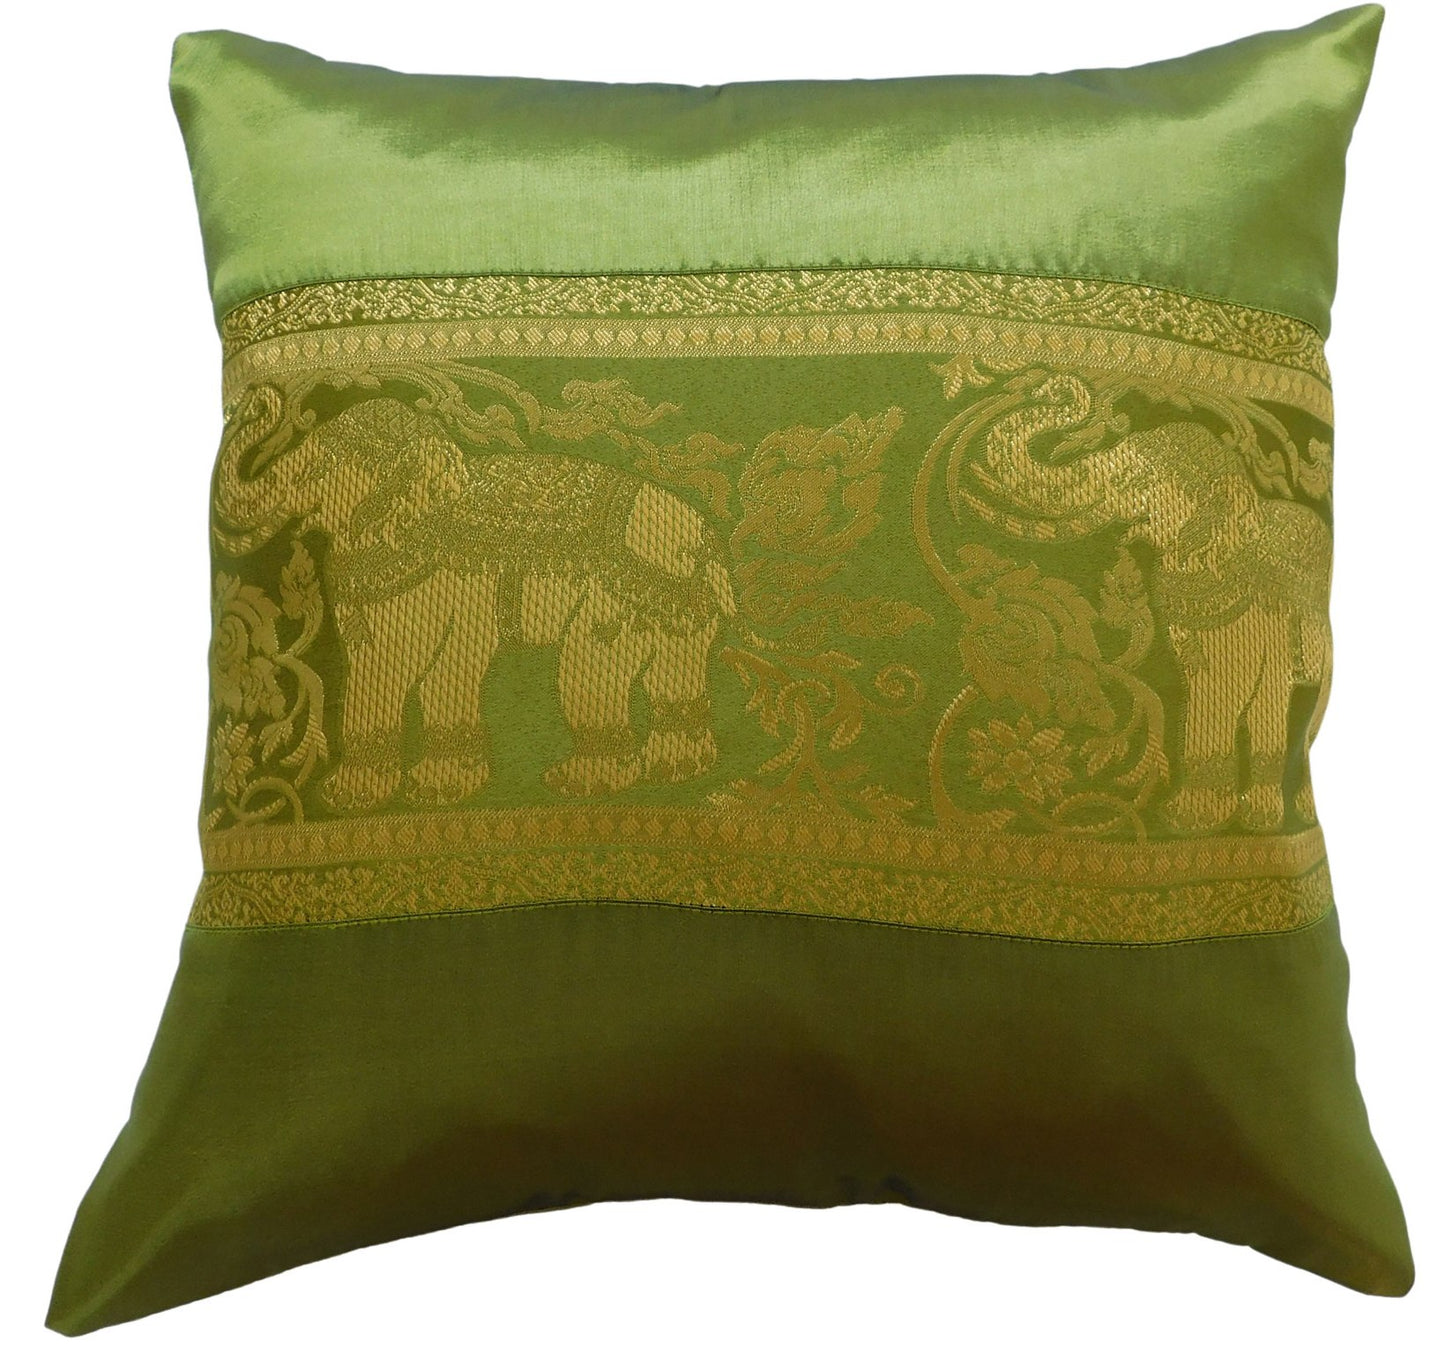 Kissen Kissenbezug Motiv Elefant einfarbig 40x40cm/15.5x15.5in verschiedene Farben Thai Seide Sofa Bett Gartenstuhl